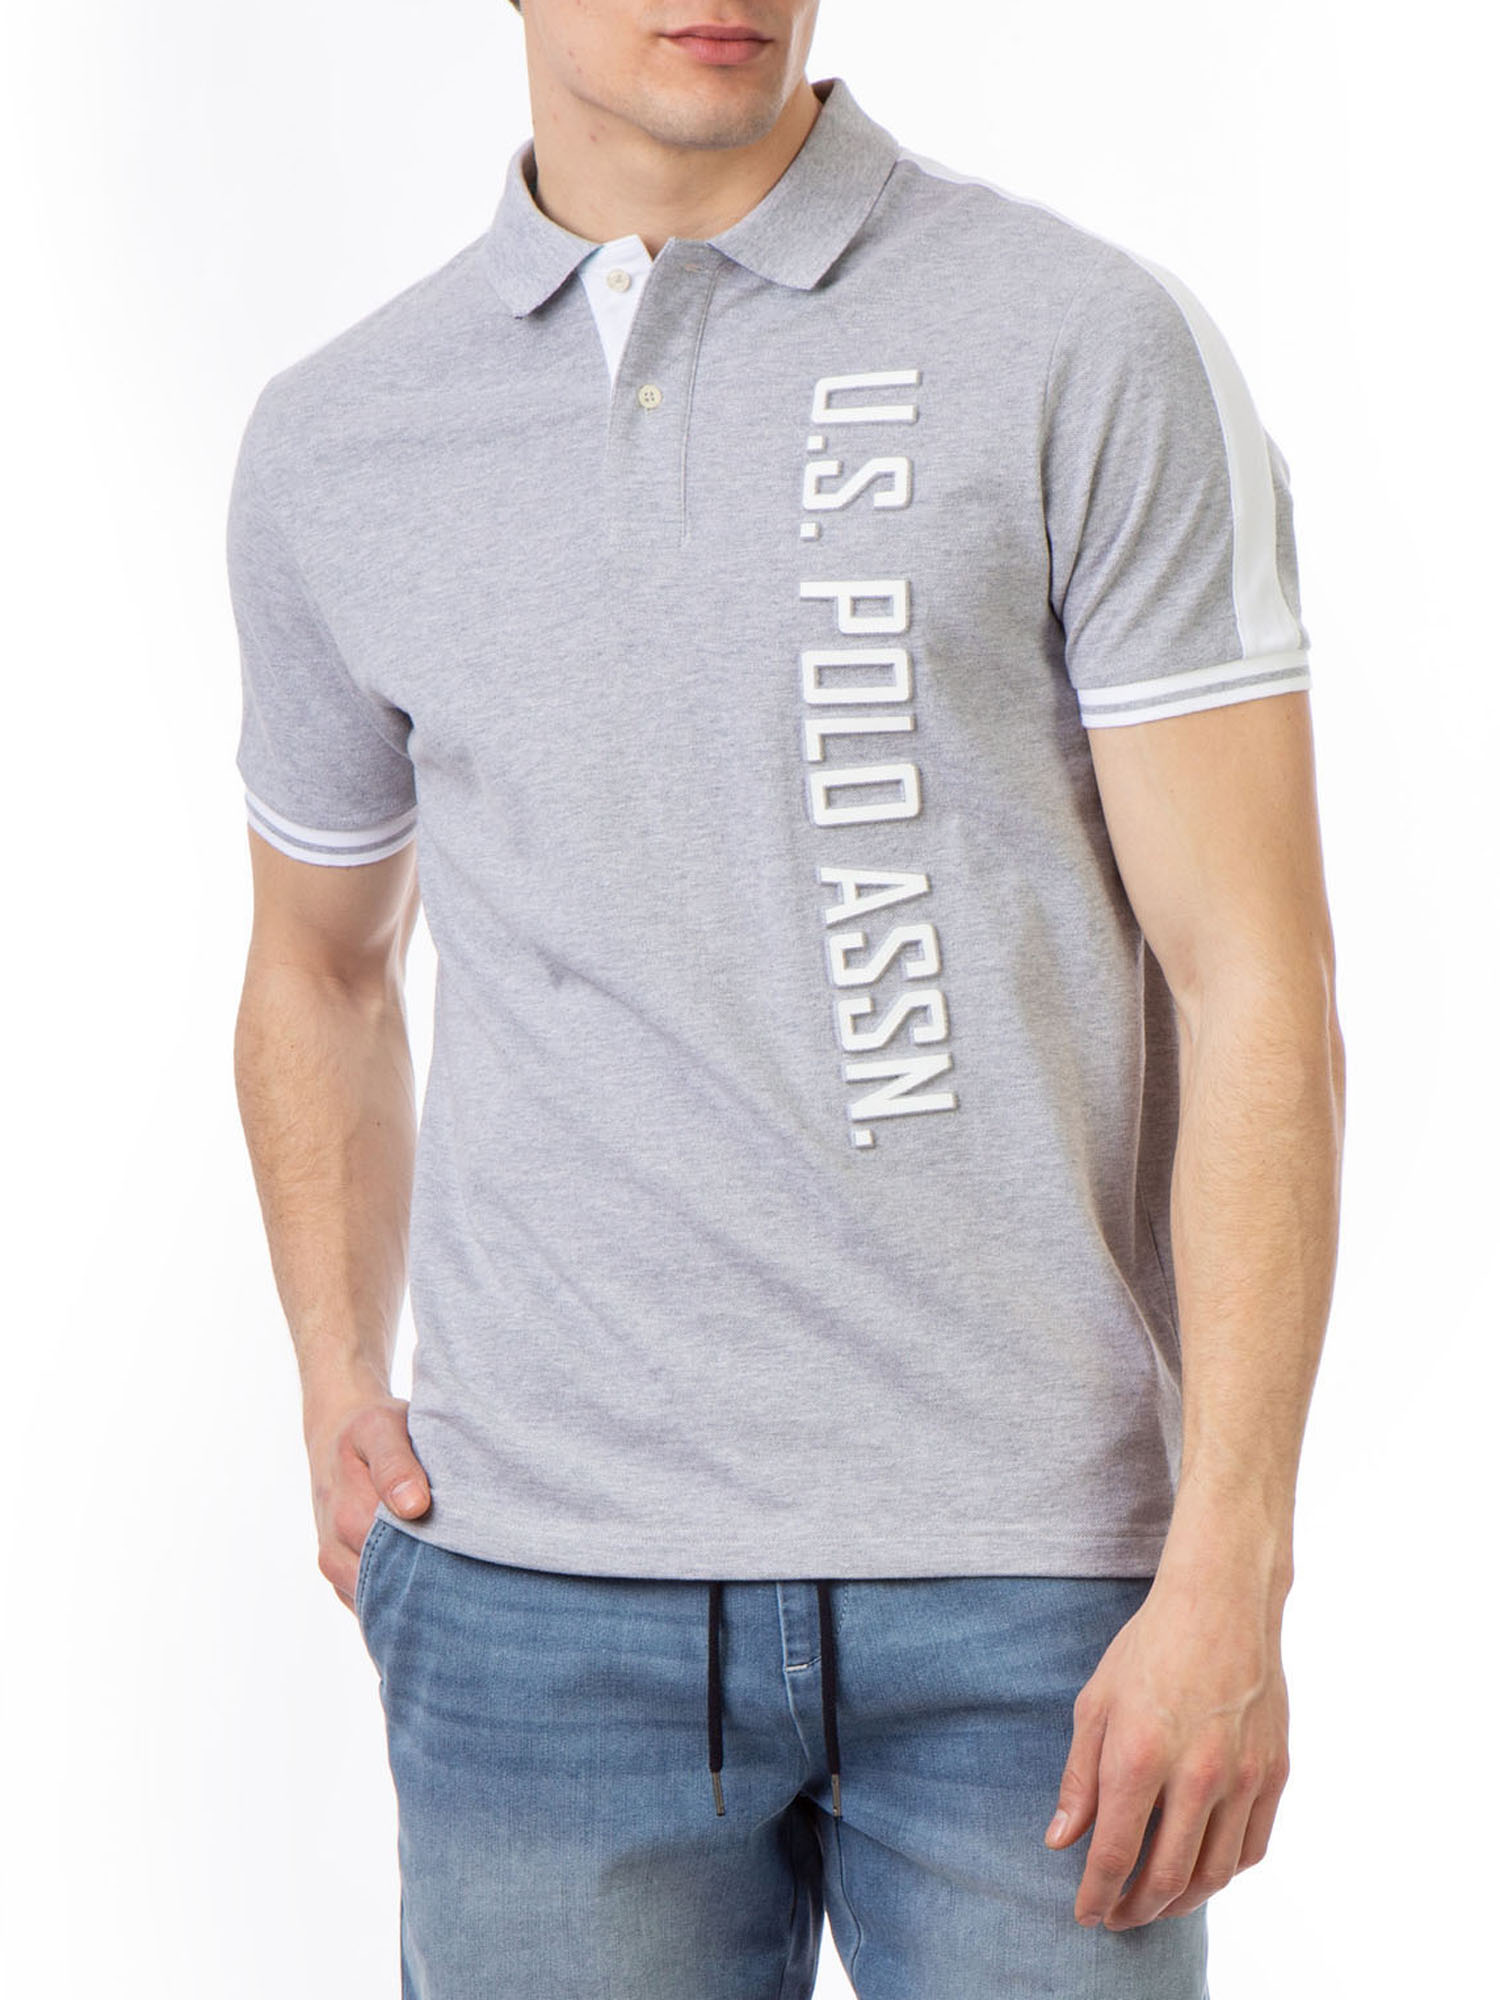 U.S. Polo Assn. Men's Embossed Logo Pique Polo Shirt - image 1 of 5